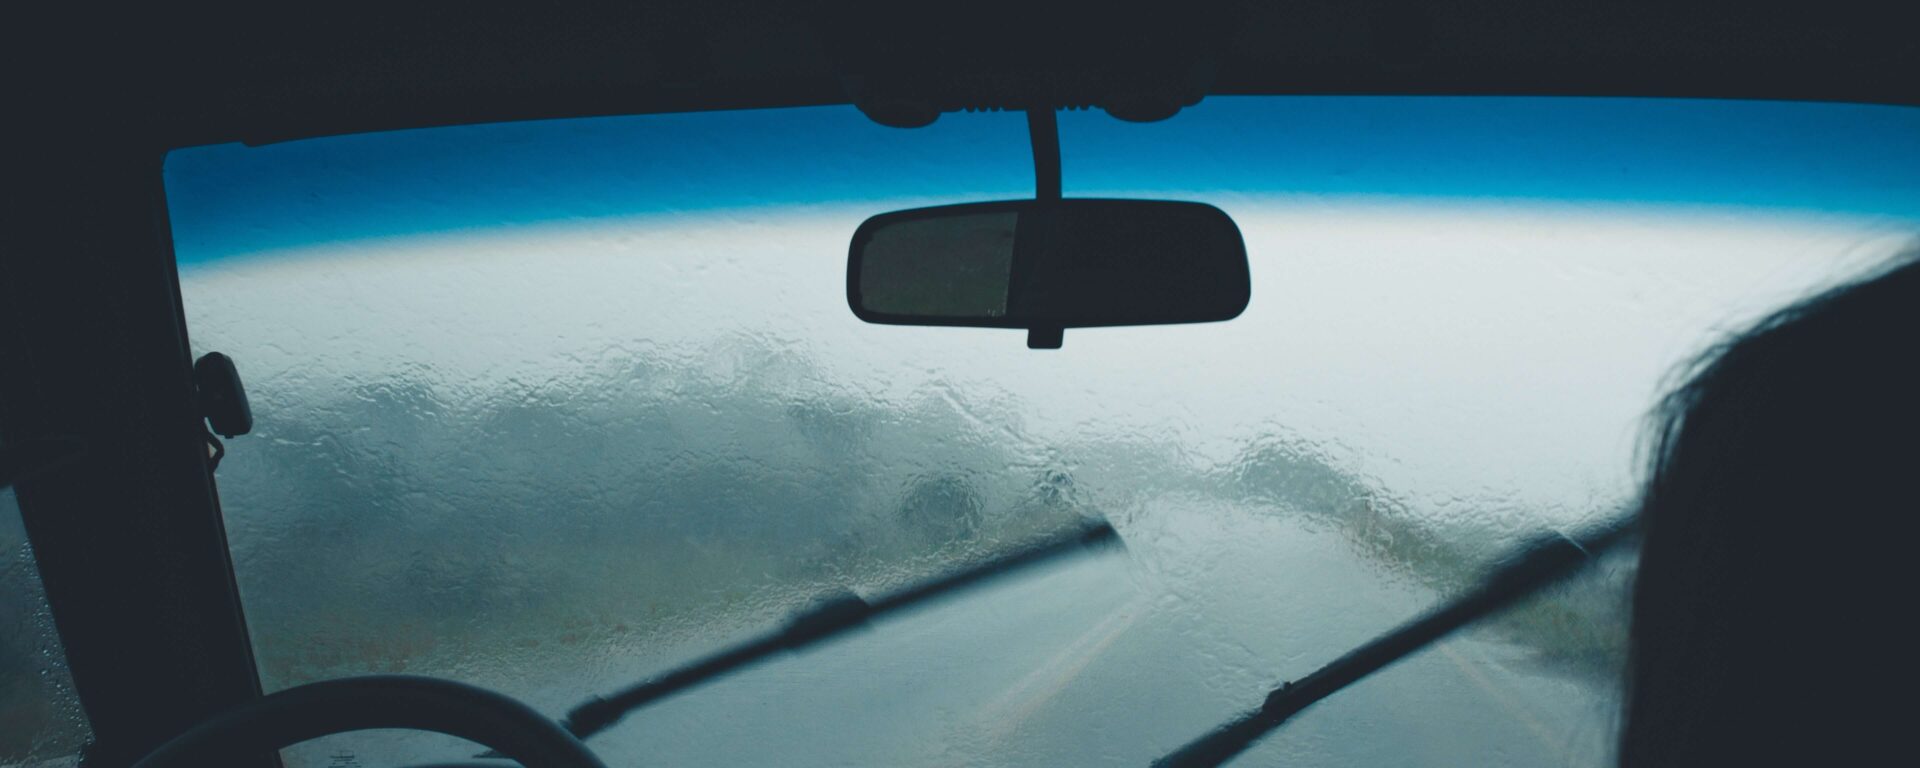 condusul masinii in conditii ploioase